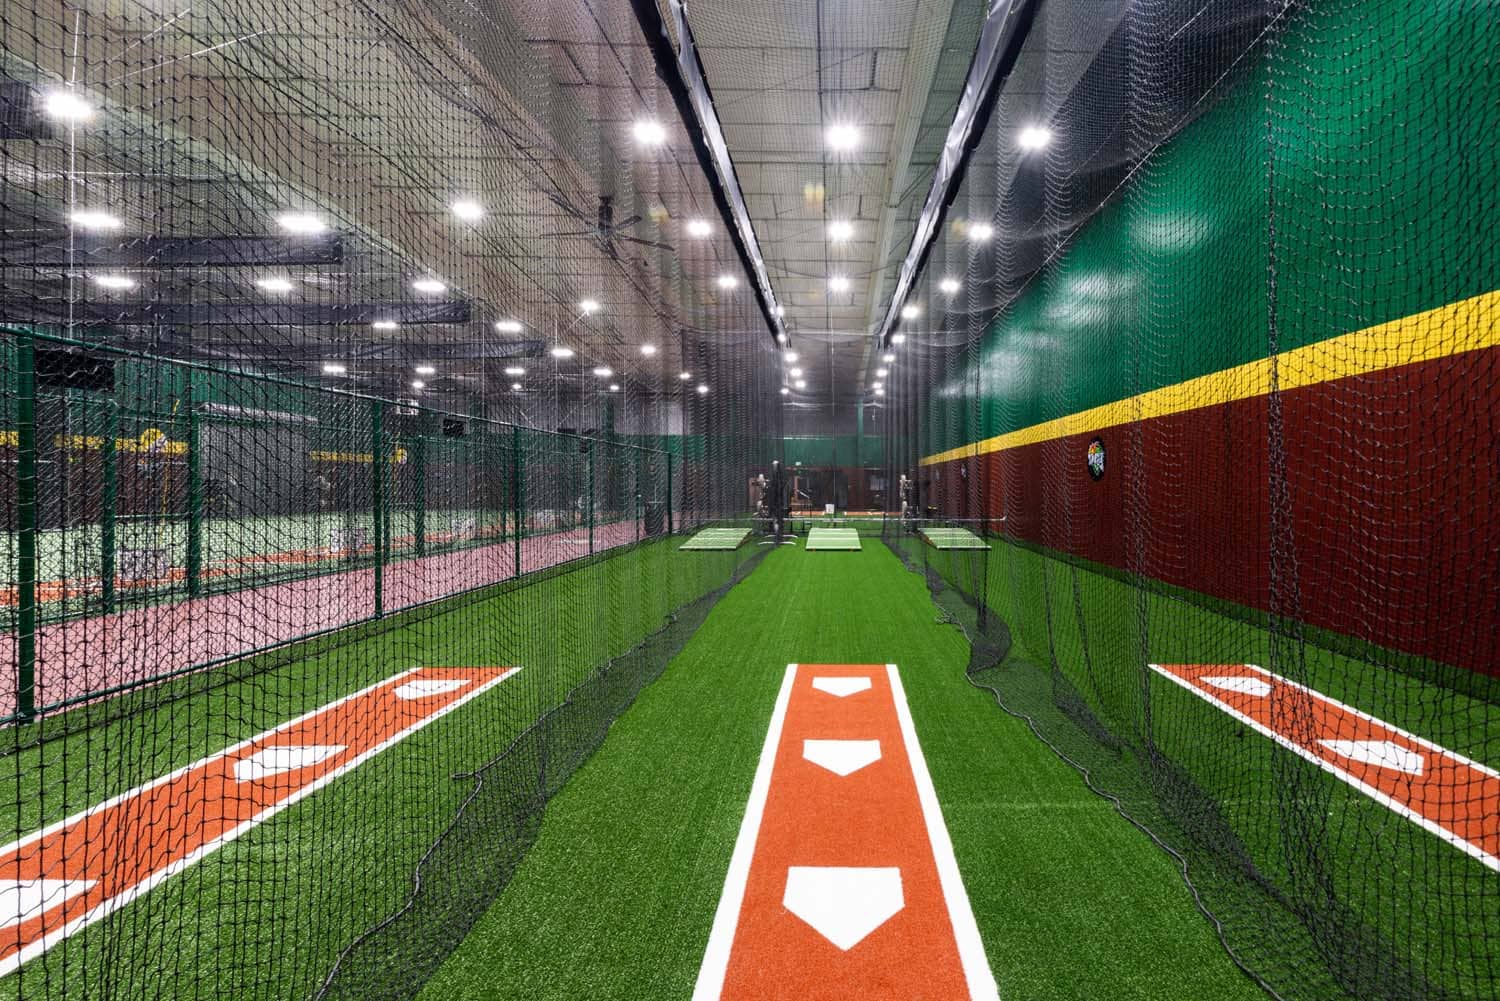 View inside batting cage at DBAT baseball facility